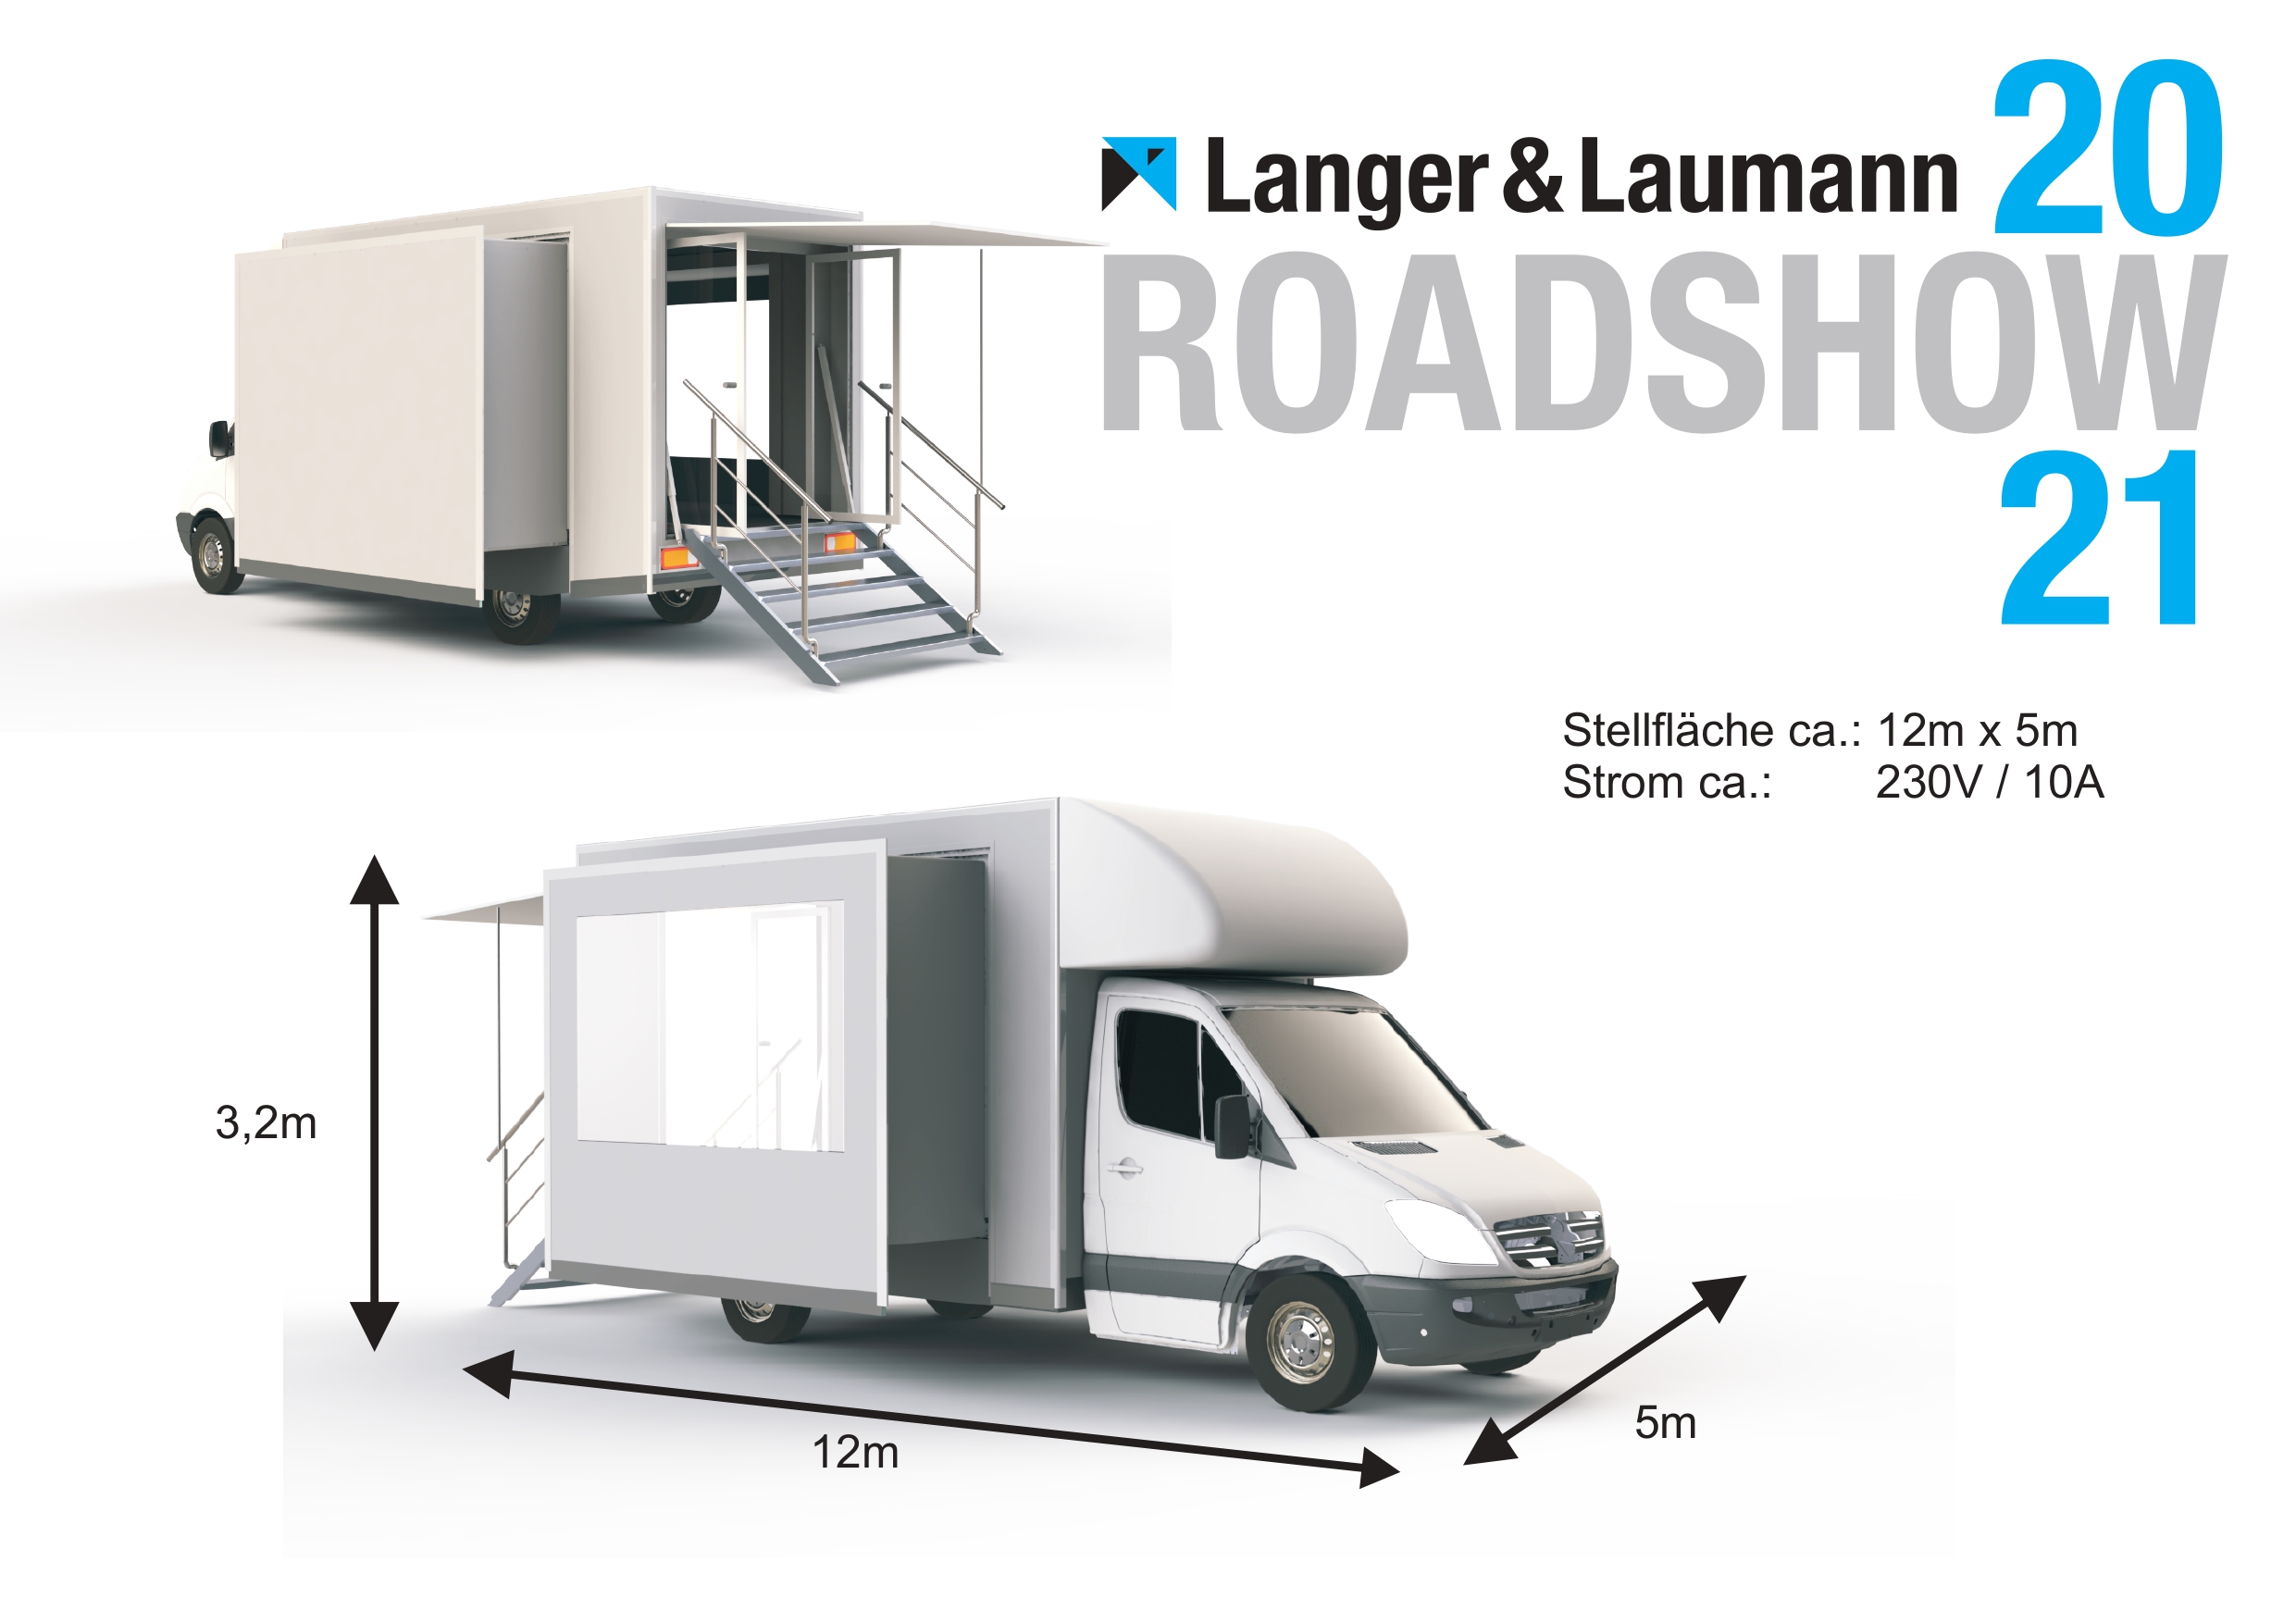 Langer & Laumann Roadshow 2020-21